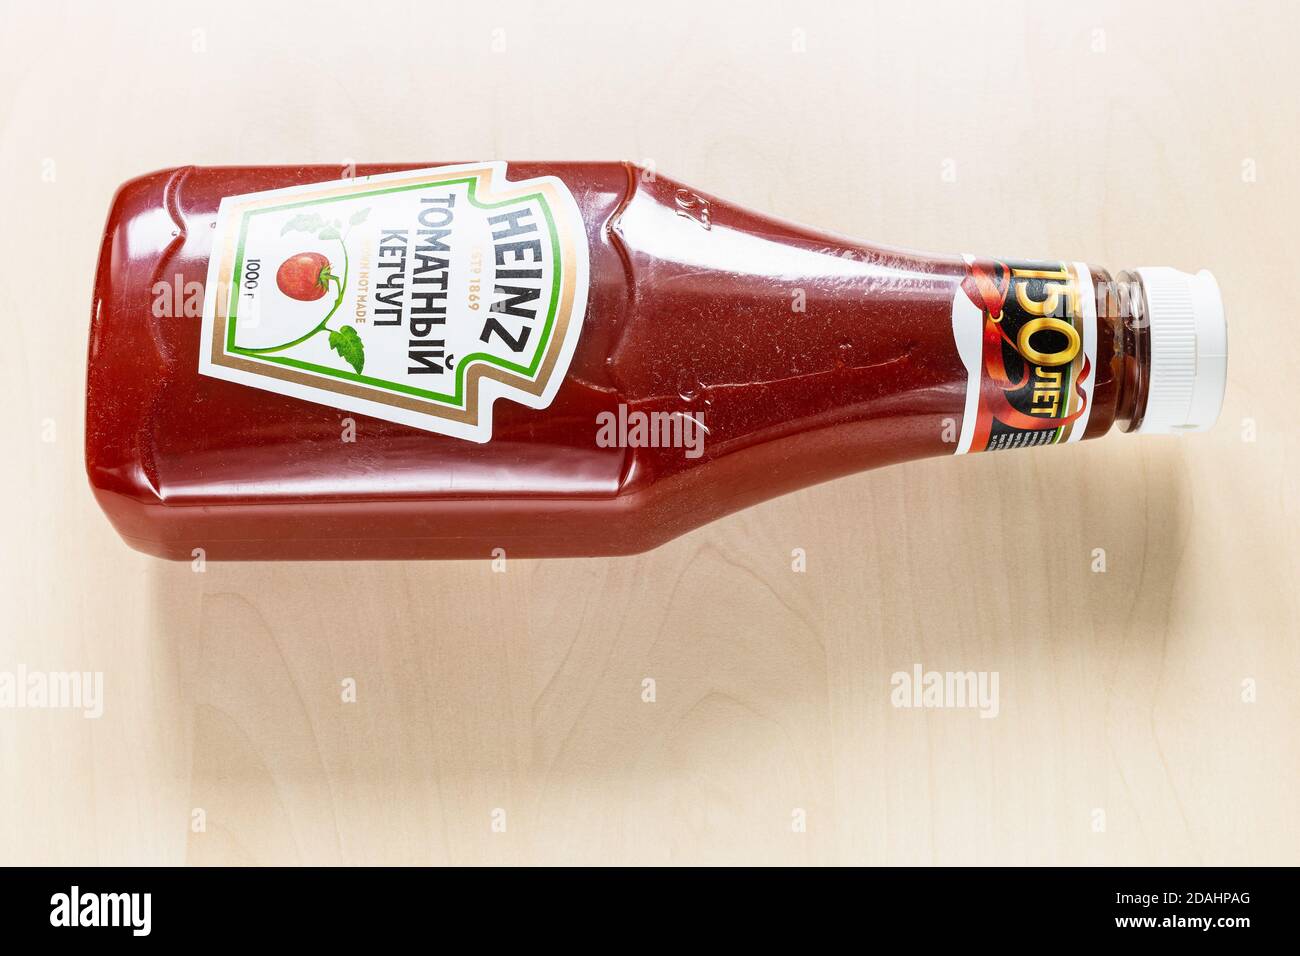 MOSCOU, RUSSIE - 4 NOVEMBRE 2020 : vue du dessus de la russe couchée 150e anniversaire de l'édition bouteille de ketchup Heinz Tomato sur un tableau brun clair. Heinz Toma Banque D'Images